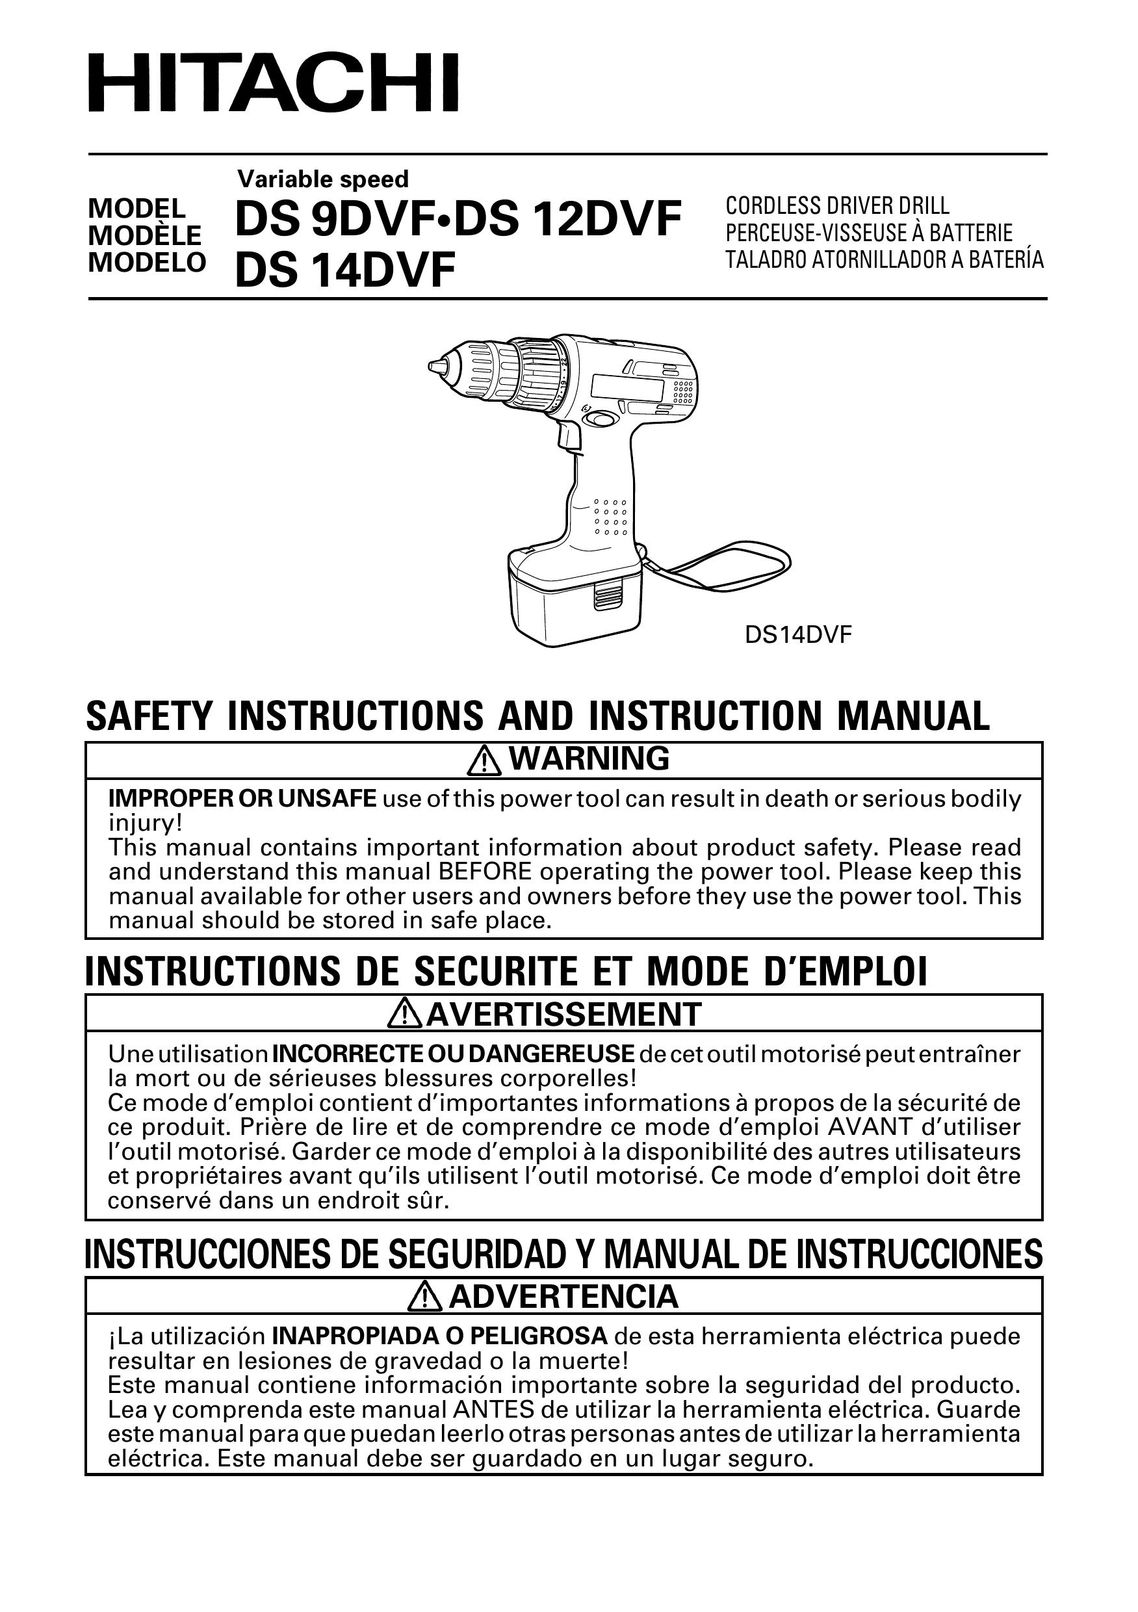 Hitachi DS14DVF Drill User Manual